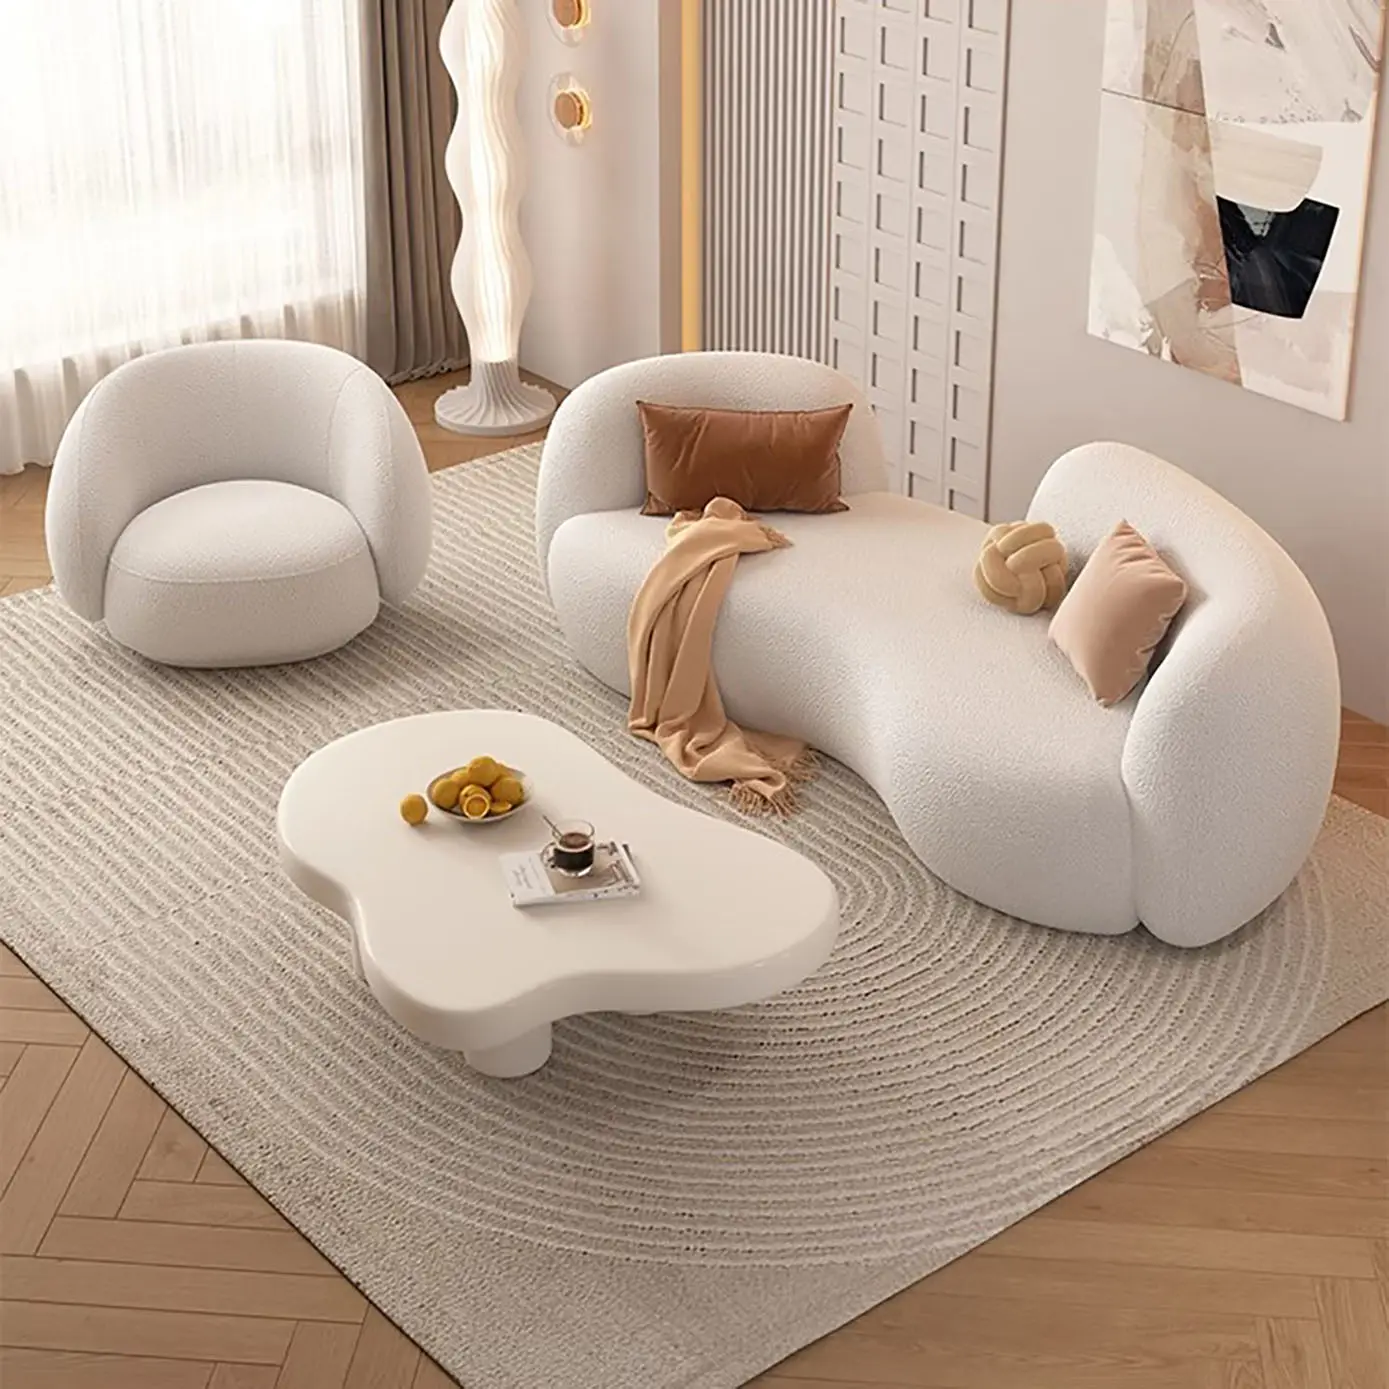 Sofá-cama curvo moderno simples de lã de cordeiro nórdico, tecido de desenho artístico para três pessoas, sofá alienígena para sala de estar, unidade pequena